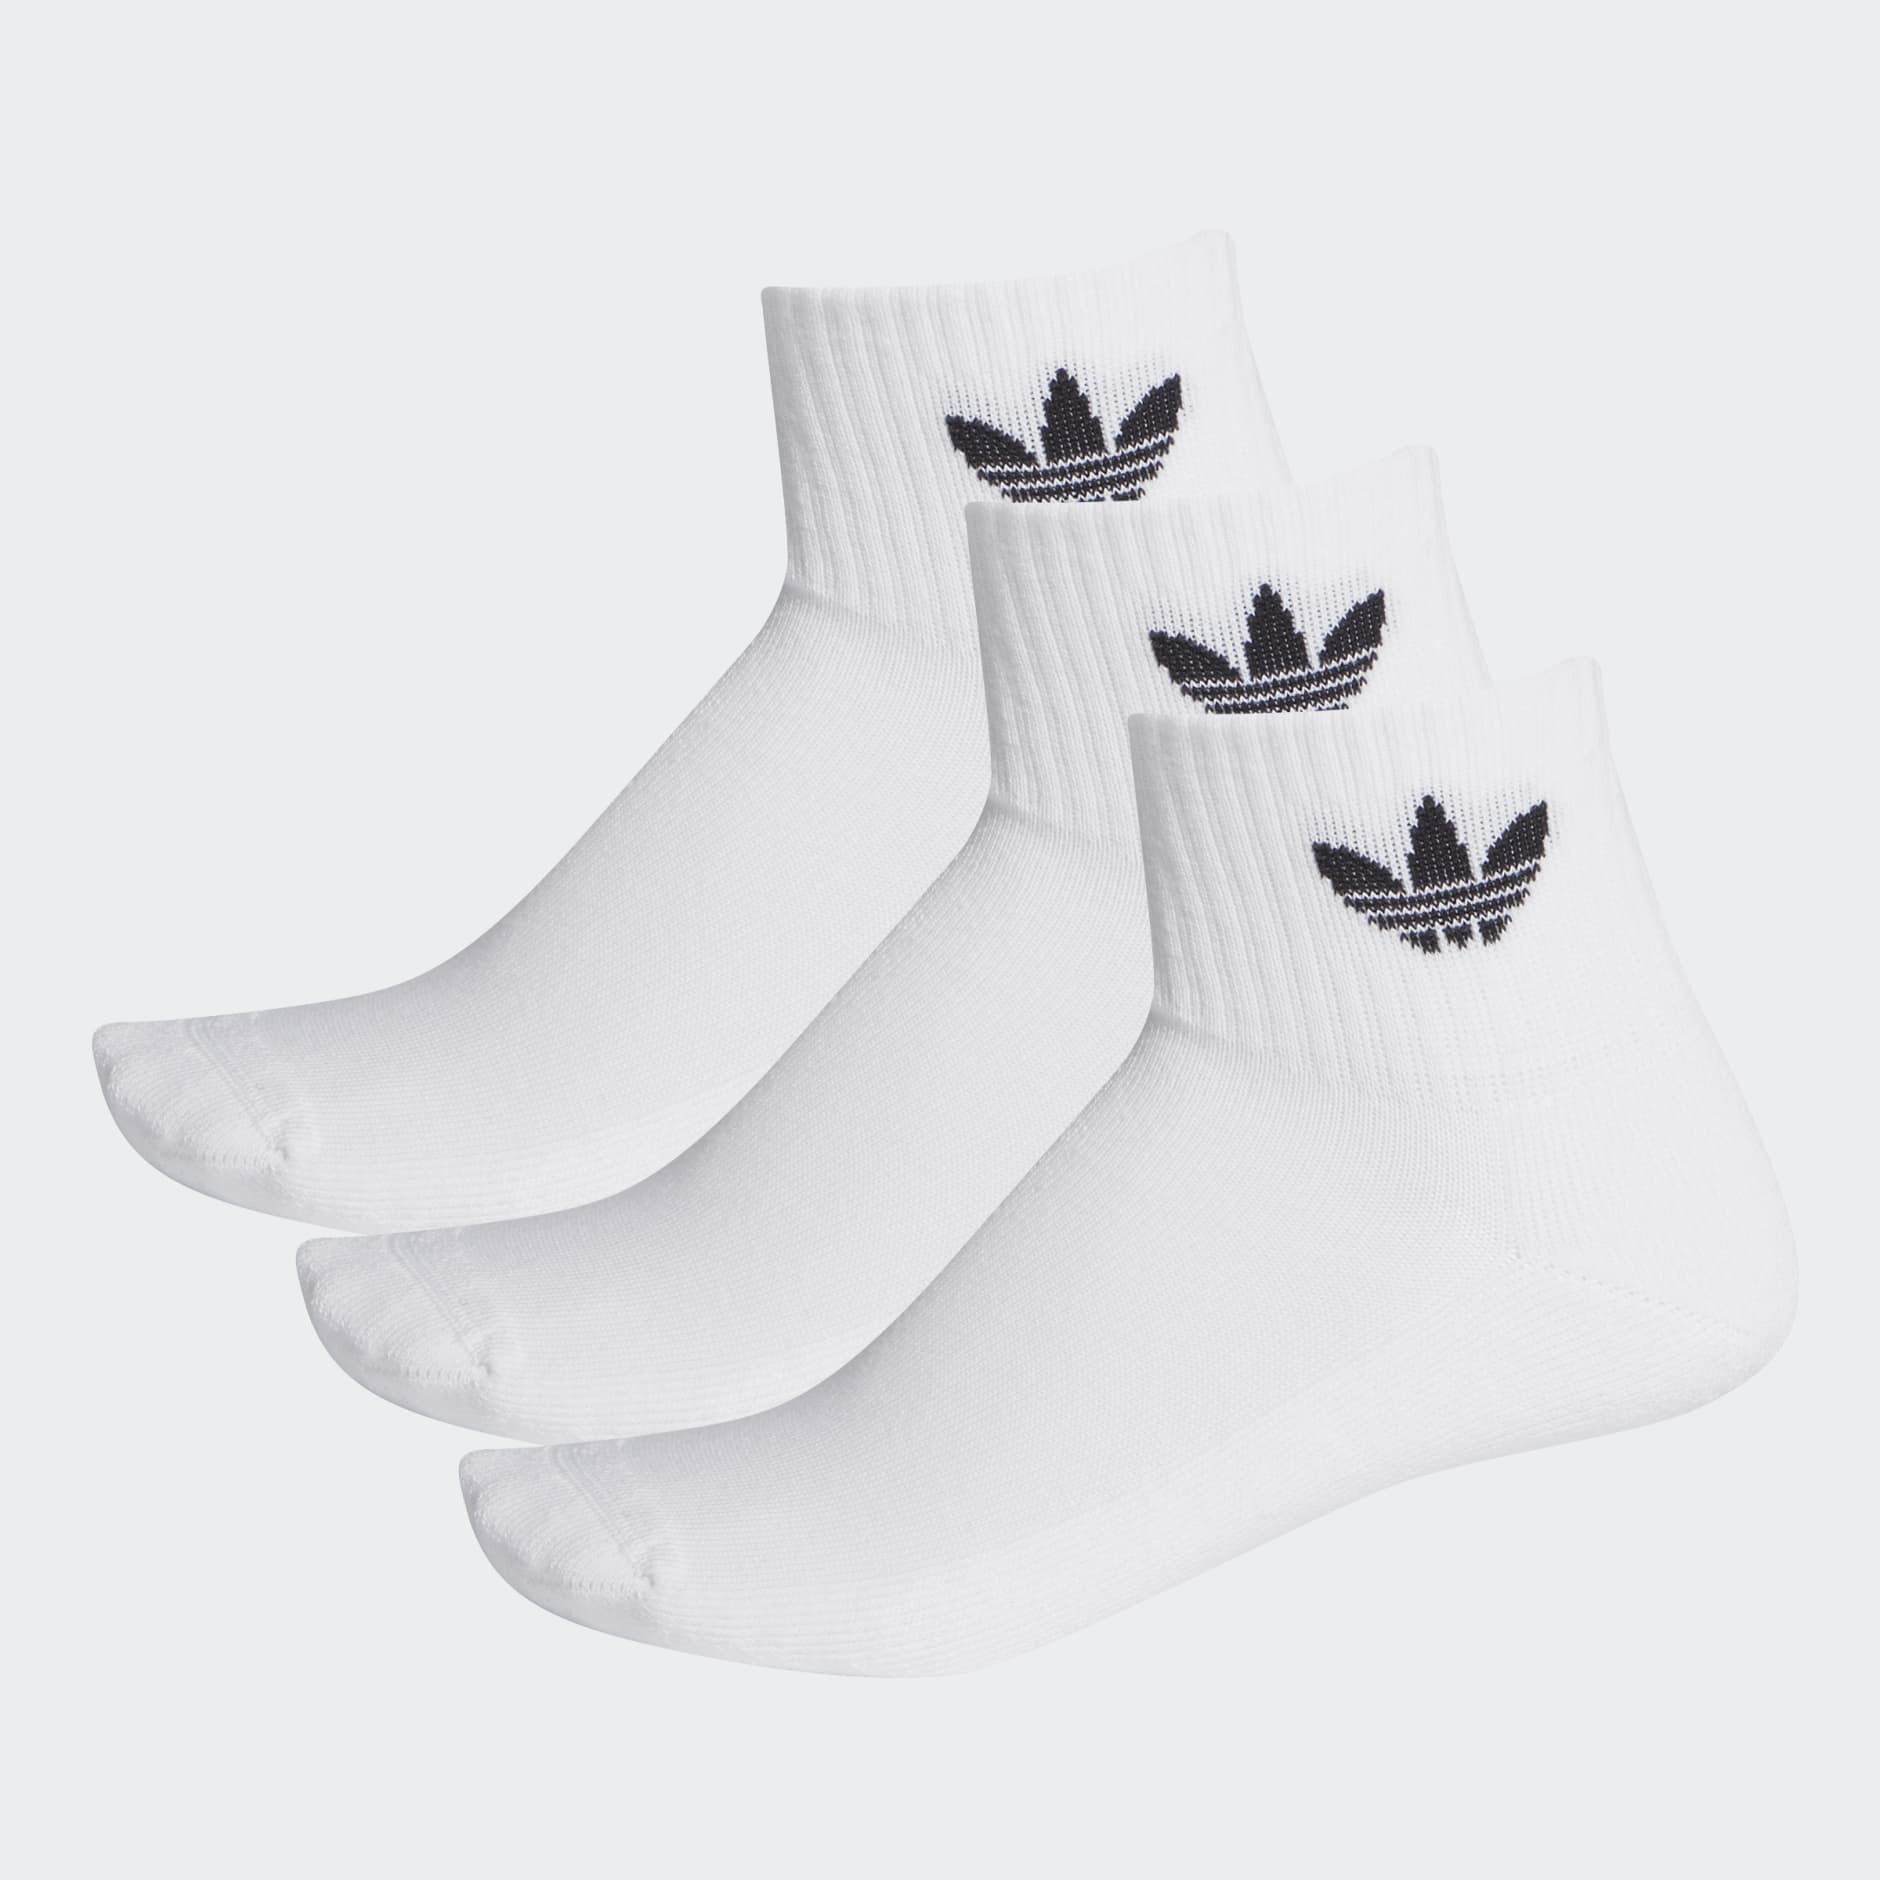 Originals Accessories - Mid Crew Socks 3 Pairs - White